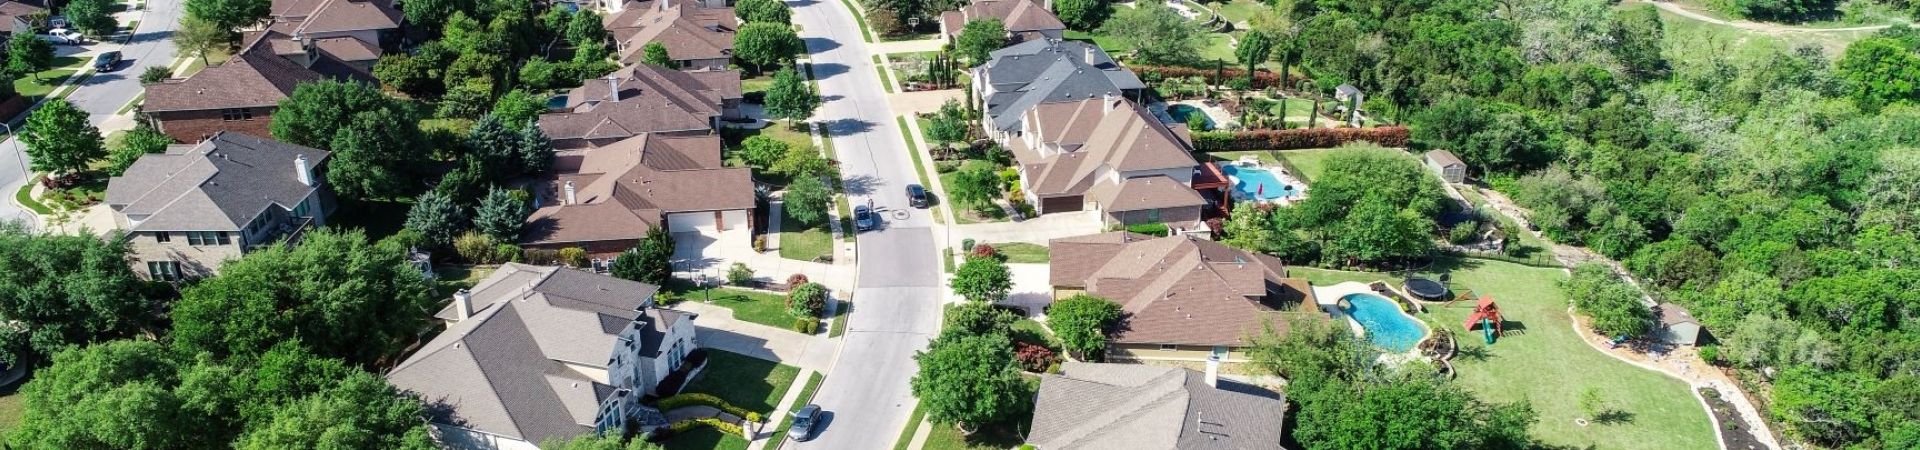 3.aerial view neighborhood